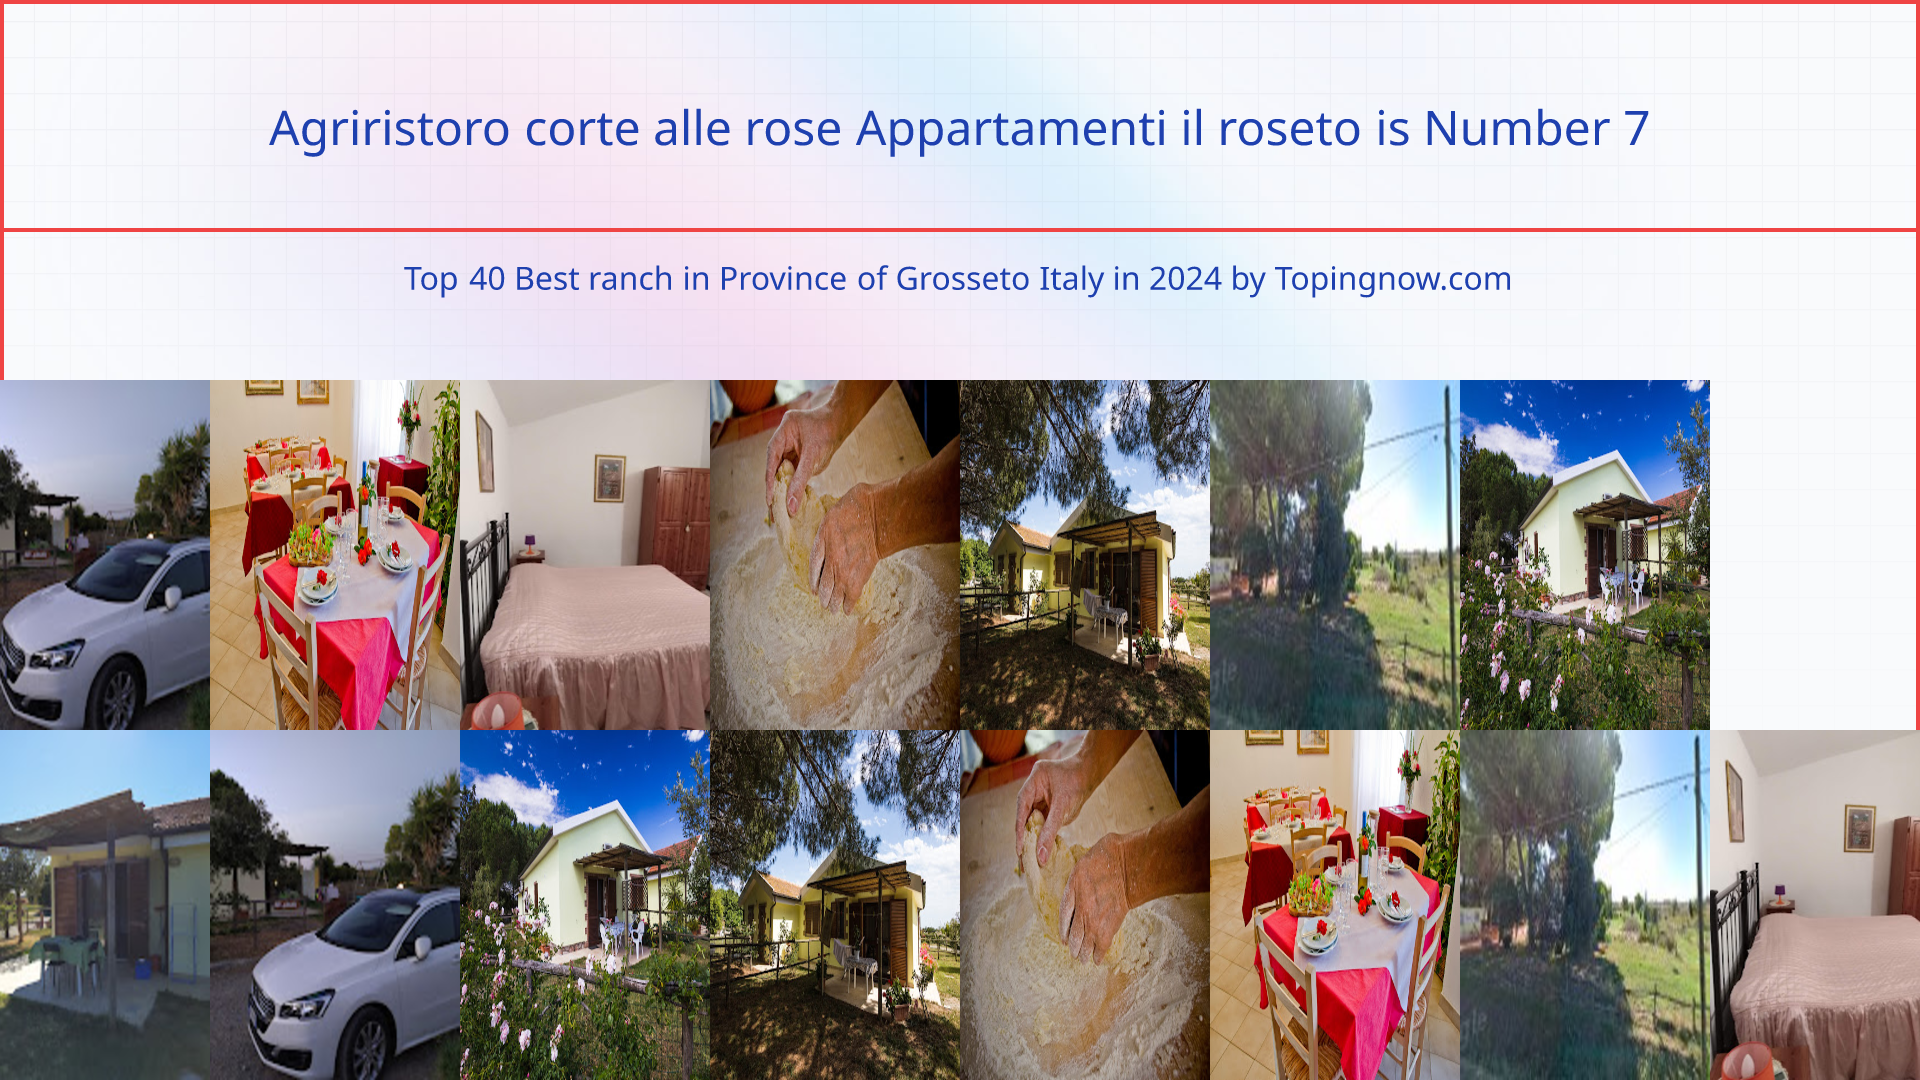 Agriristoro corte alle rose Appartamenti il roseto: Top 40 Best ranch in Province of Grosseto Italy in 2024